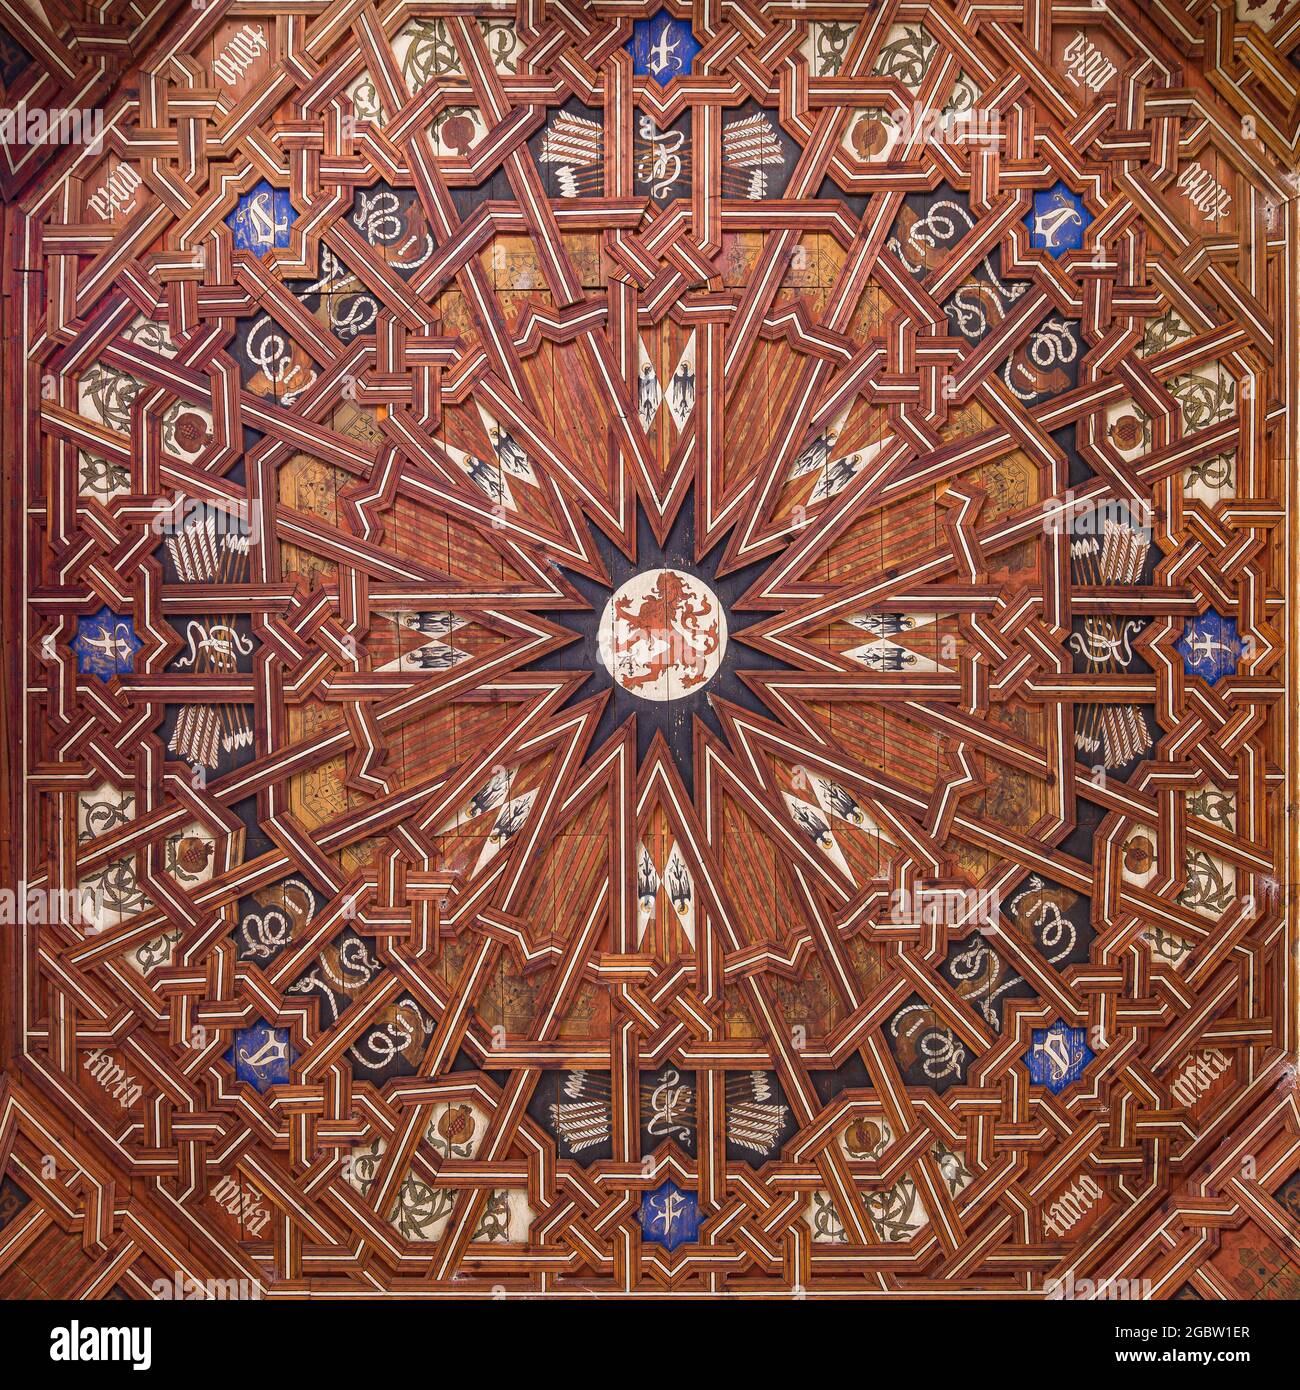 Mudejar wooden coffered ceiling at San Juan de los Reyes Monastery, Toledo, Spain. Stock Photo